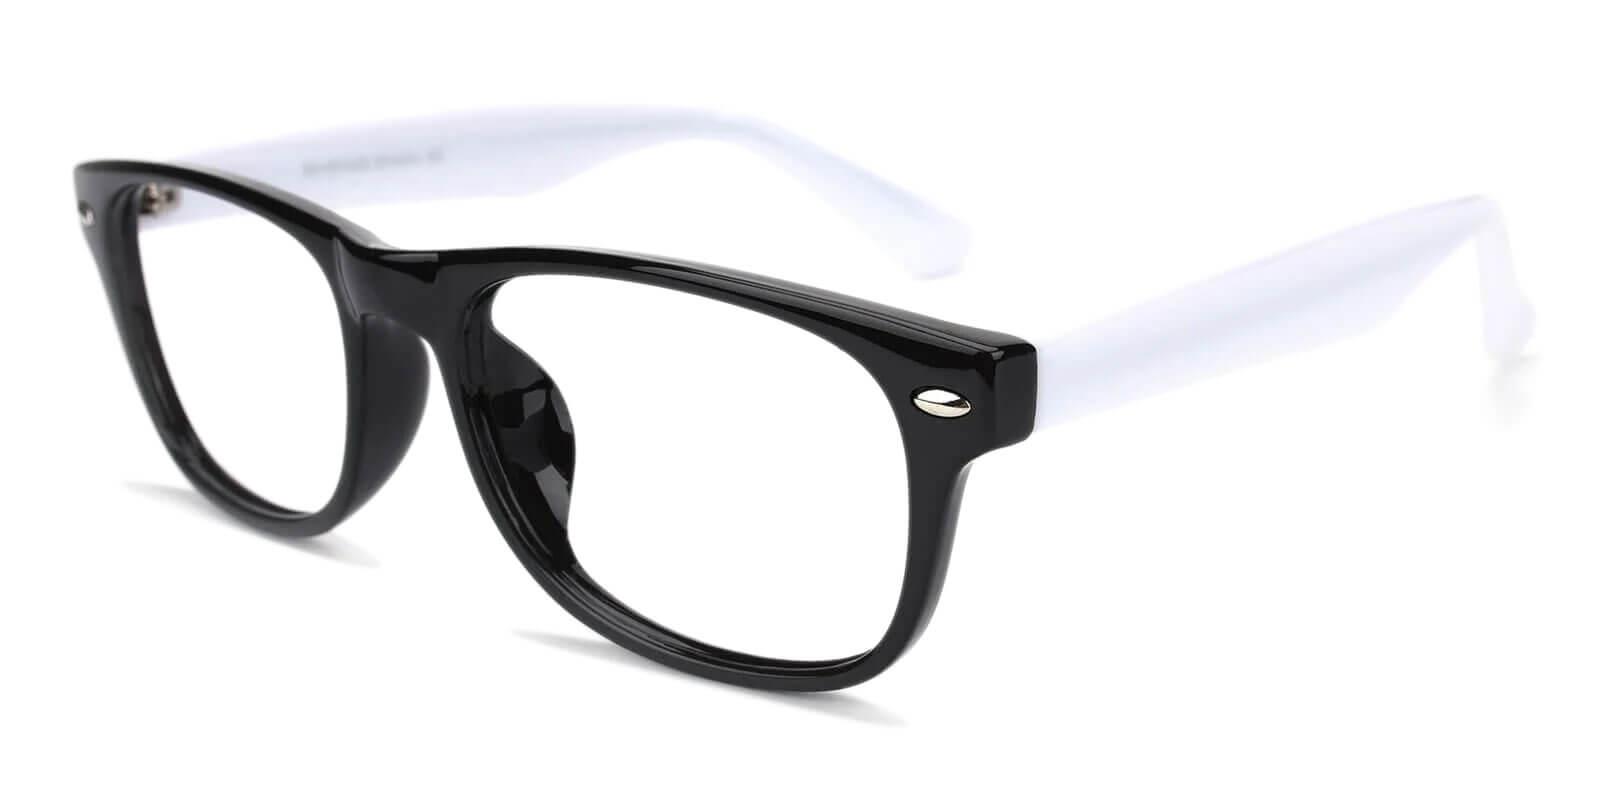 Mode Multicolor Plastic Eyeglasses , UniversalBridgeFit Frames from ABBE Glasses